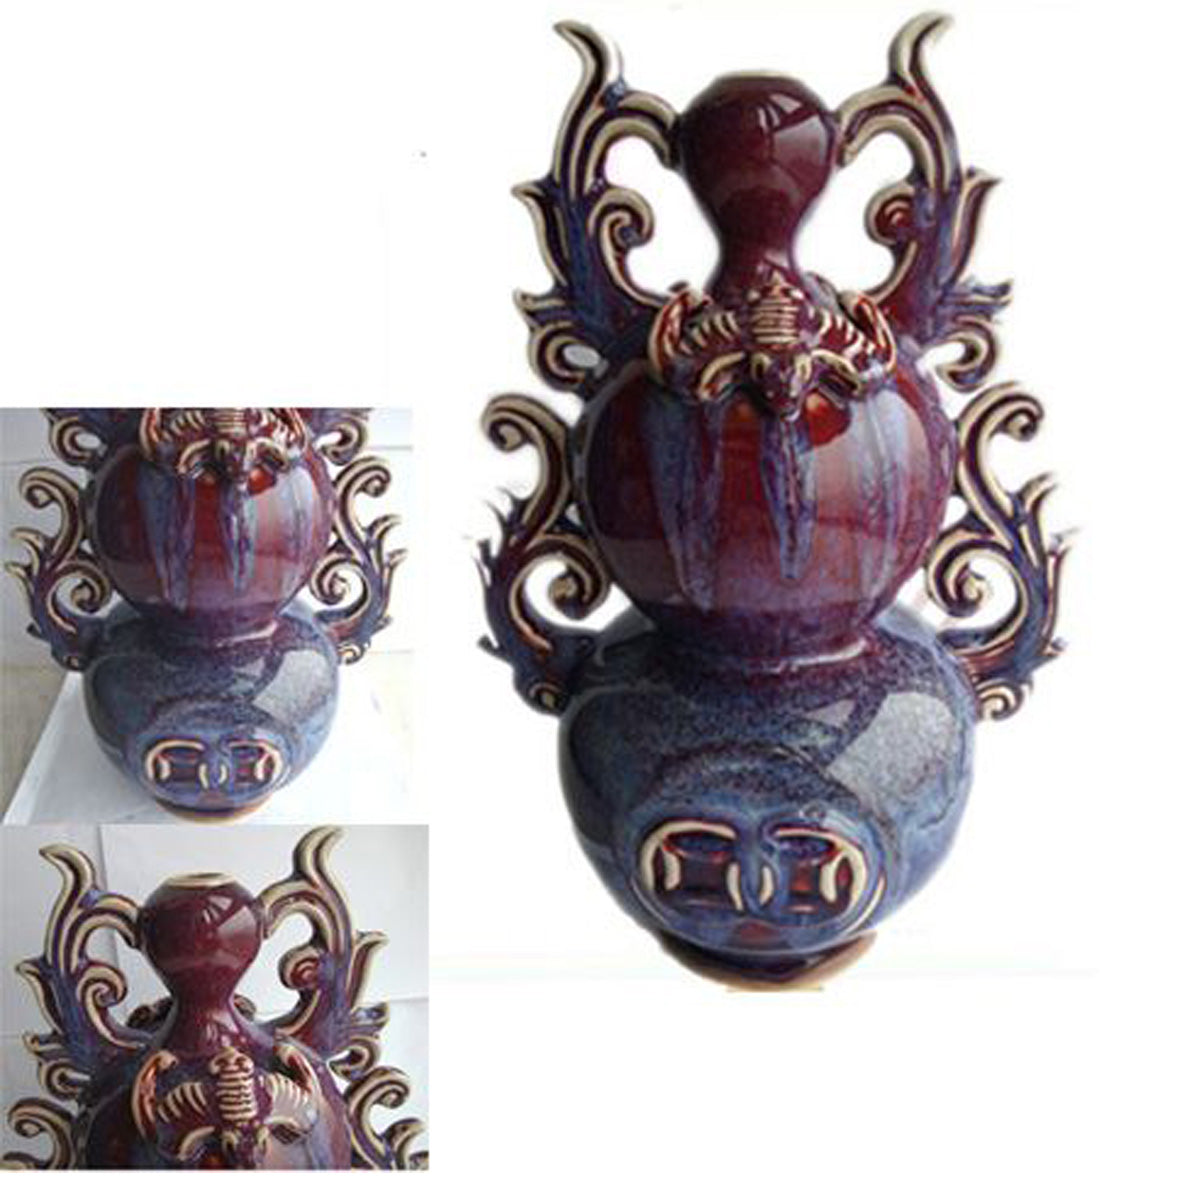 Fire Sale! Chun Porcelain Auspicious Vase Fine Asian Antiques Style Home Decor Decorating Accent